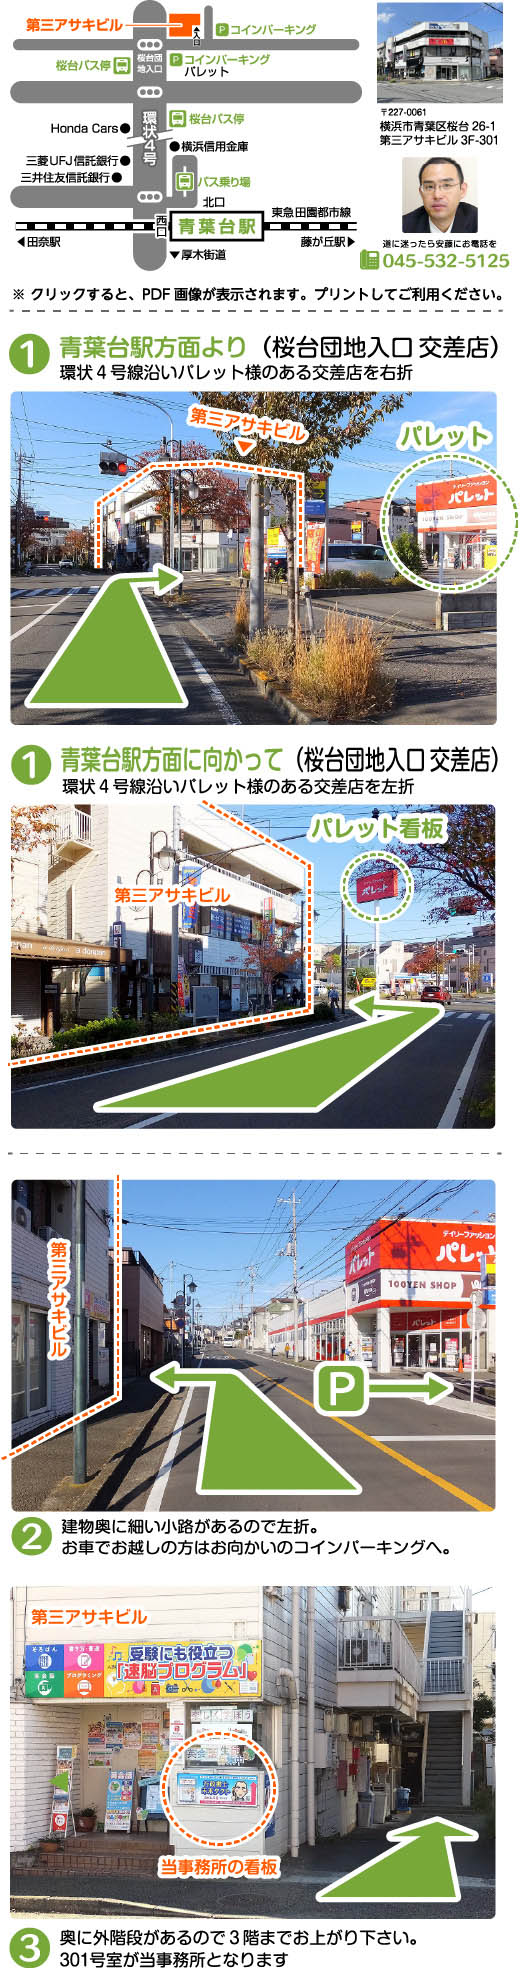 横浜市都筑区の当事務所の詳細な案内図をご用意しました